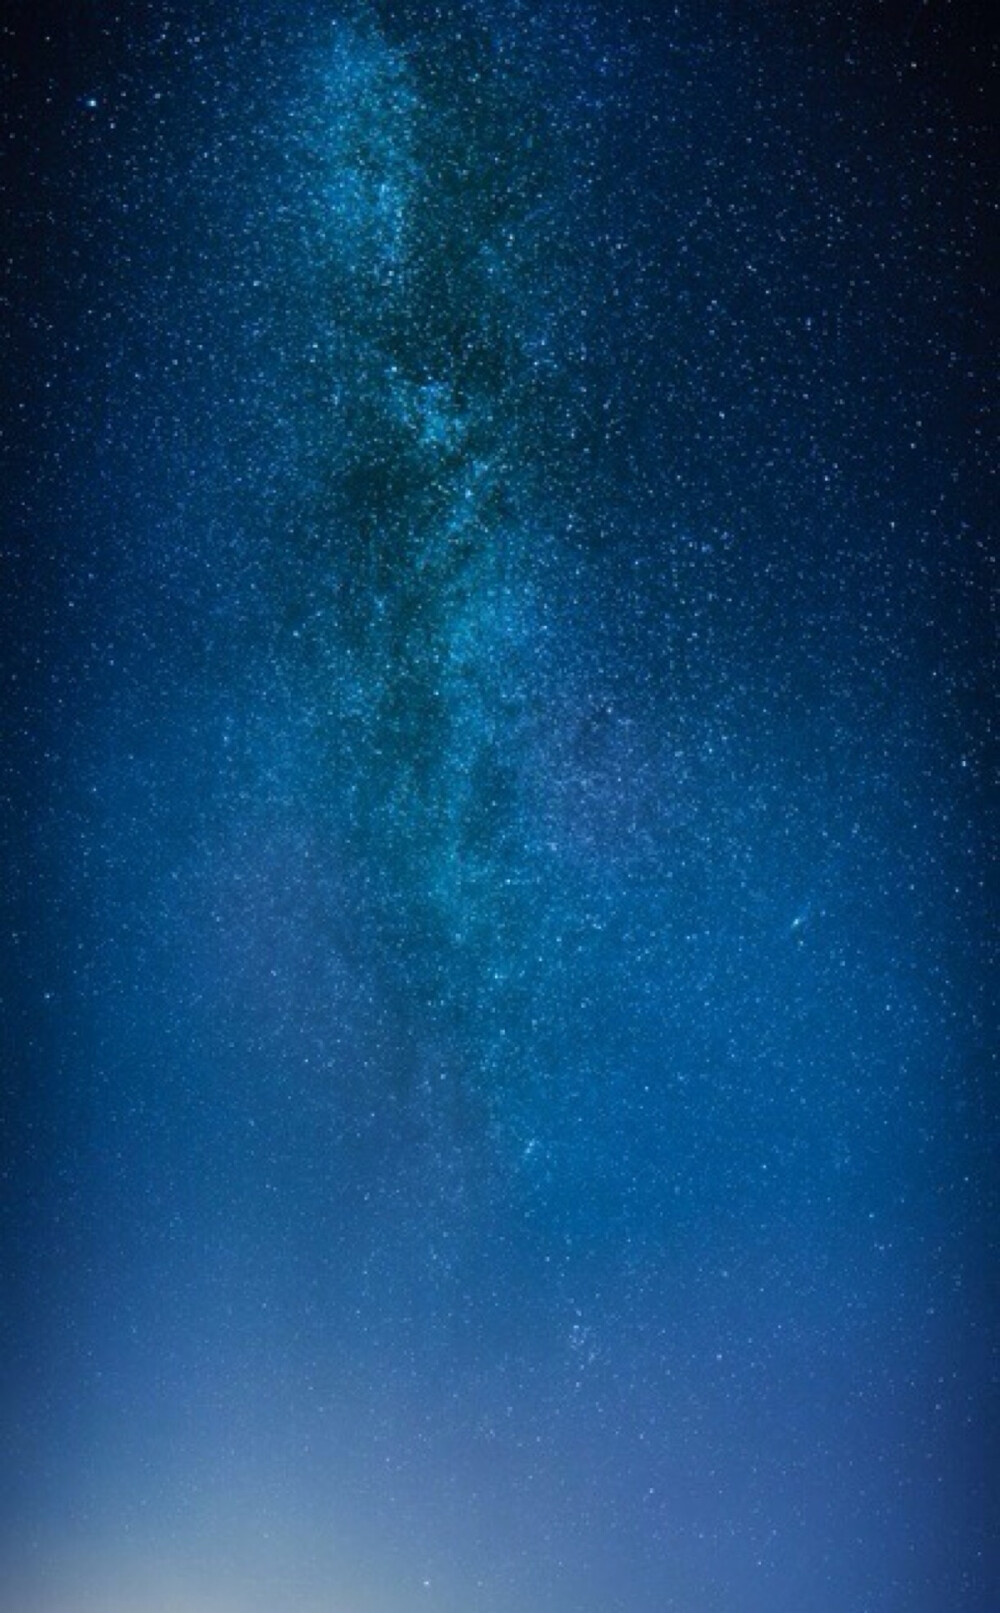 唯美星空 夜景 夜空 星光 自然风景 iphone手机壁纸 唯美壁纸 锁屏